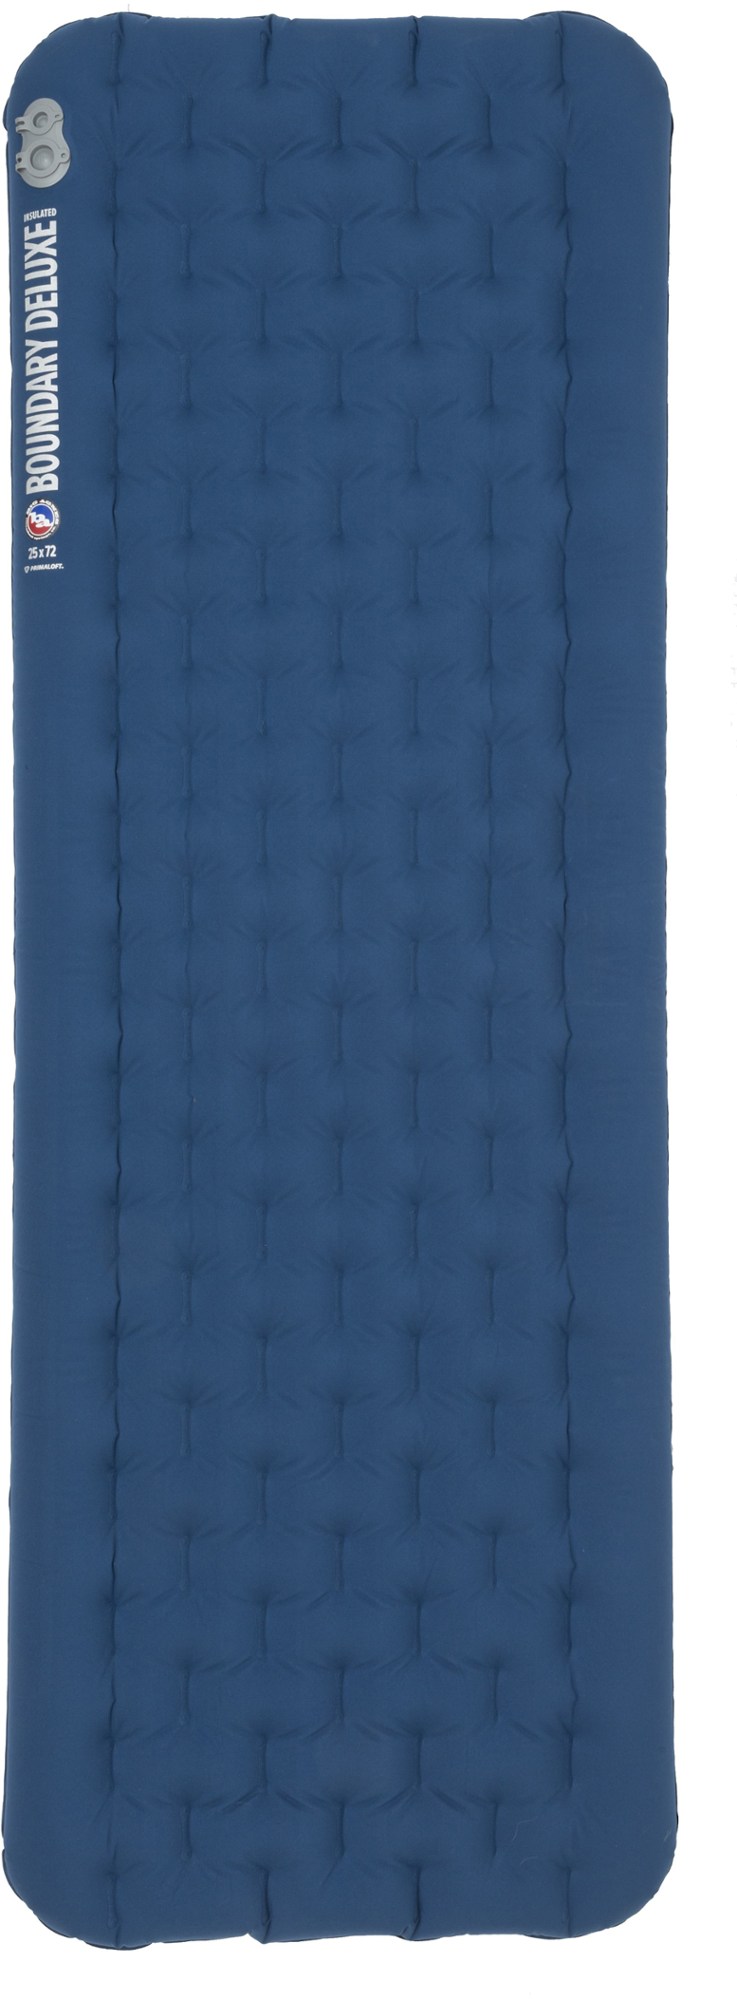 Изолированный спальный коврик Boundary Deluxe Big Agnes, синий